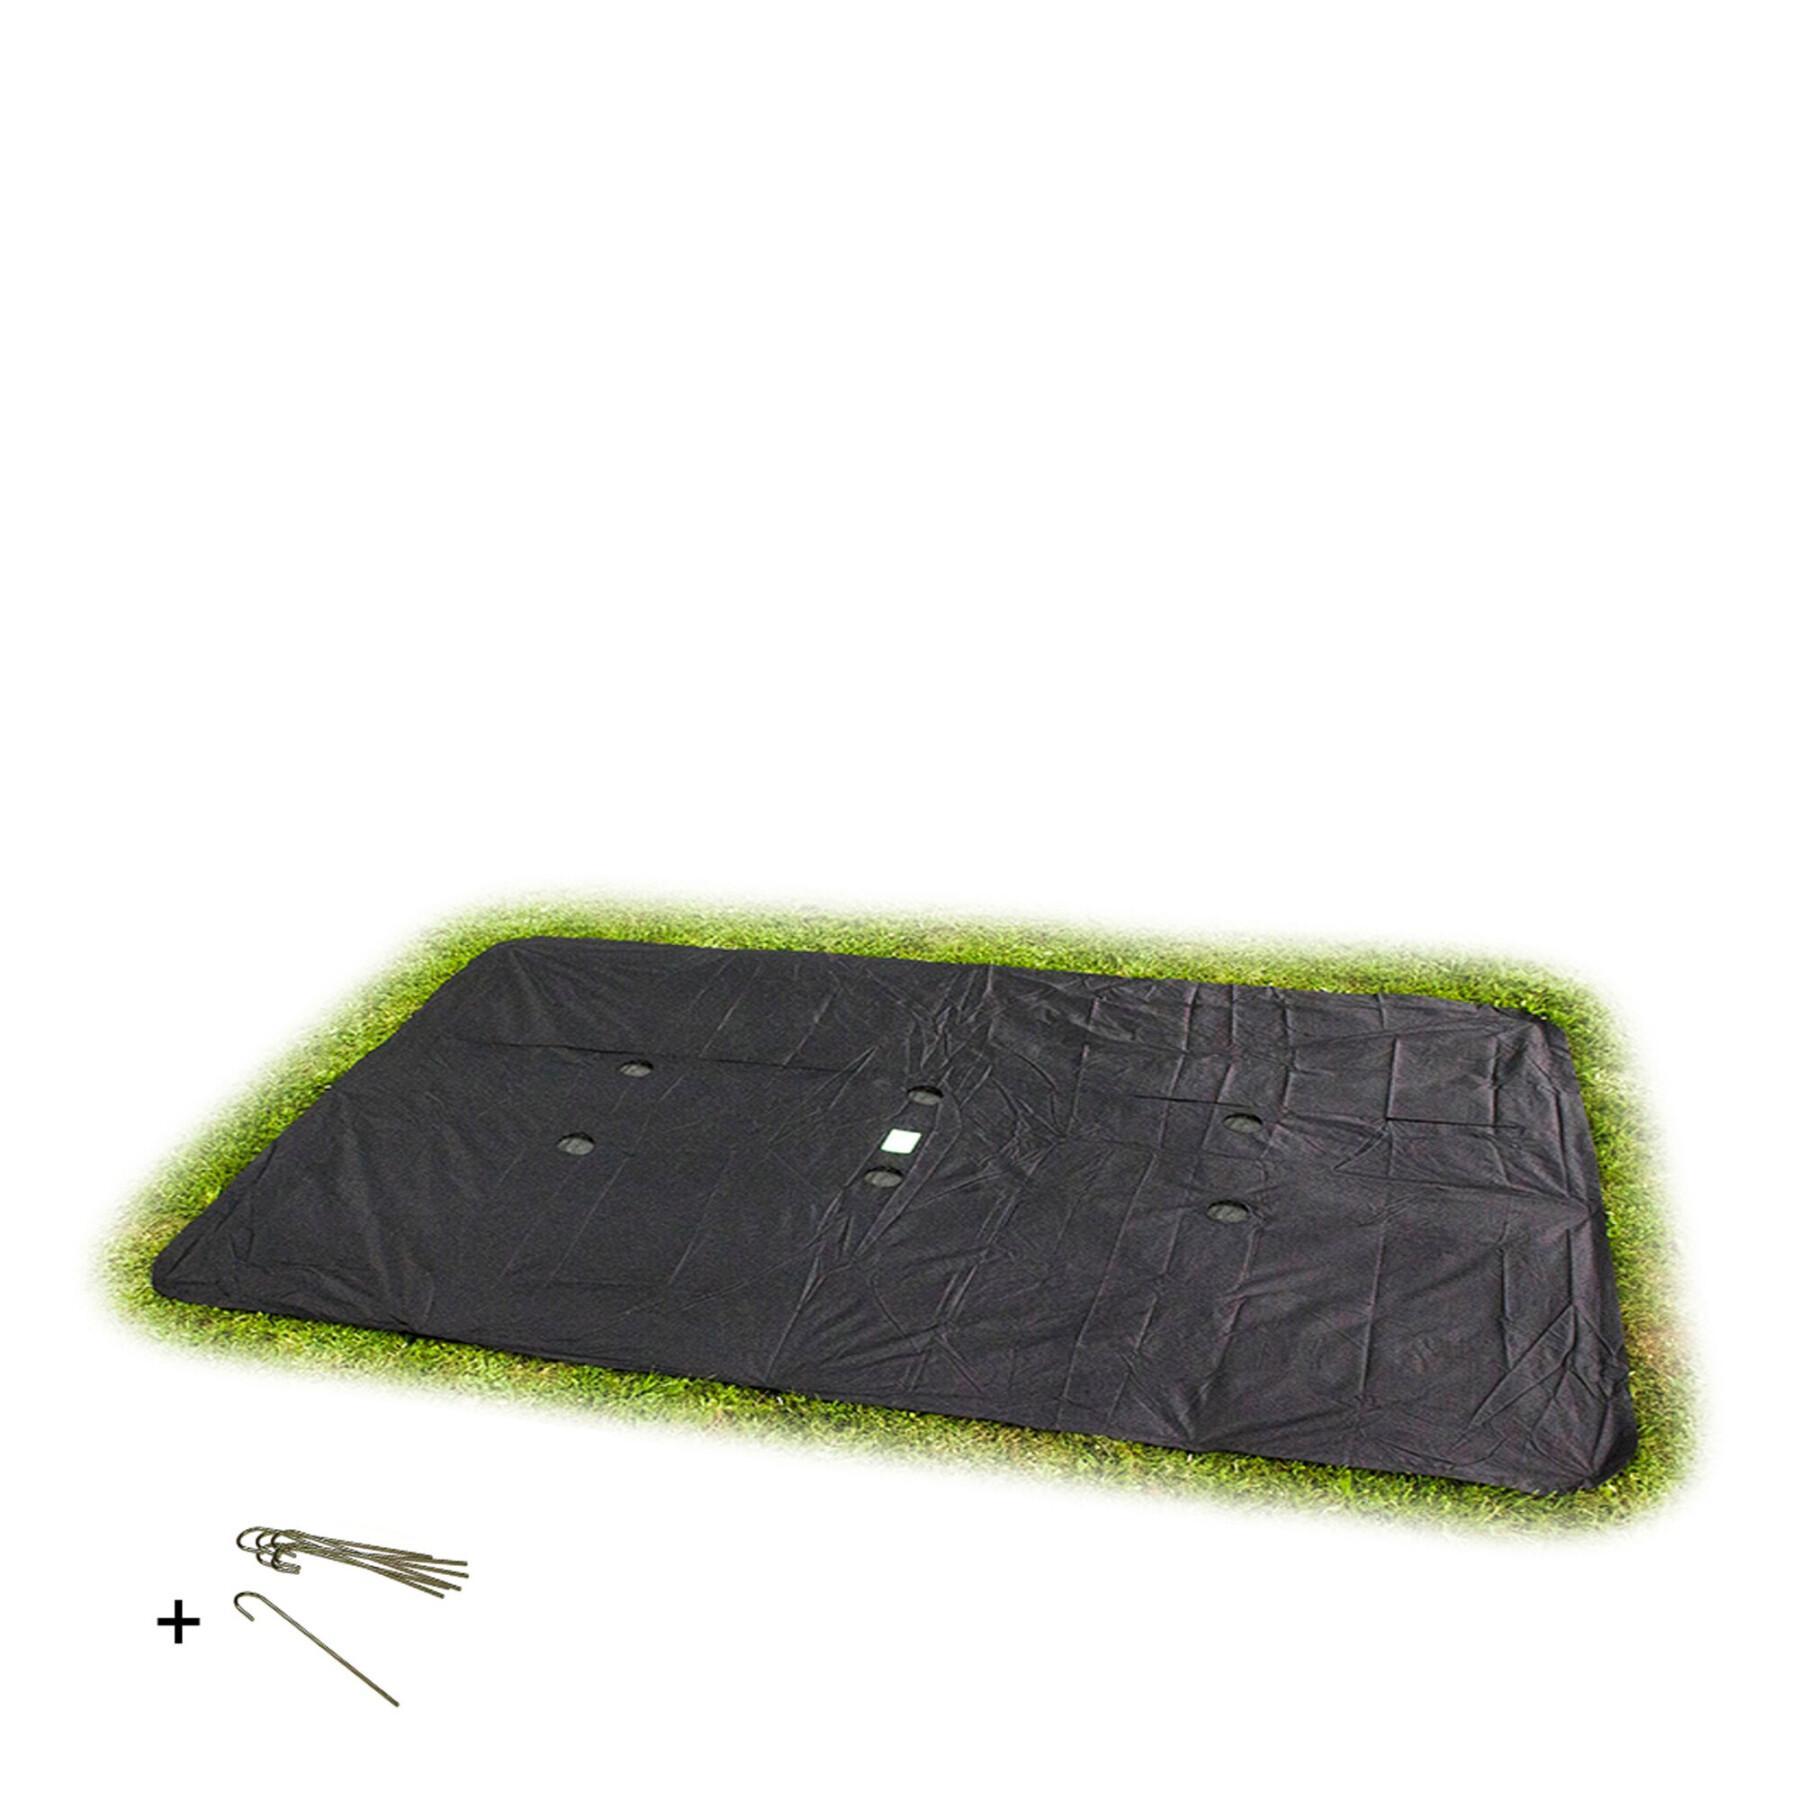 Cubierta protectora rectangular para la cama elástica en el suelo Exit Toys 244 x 427 cm